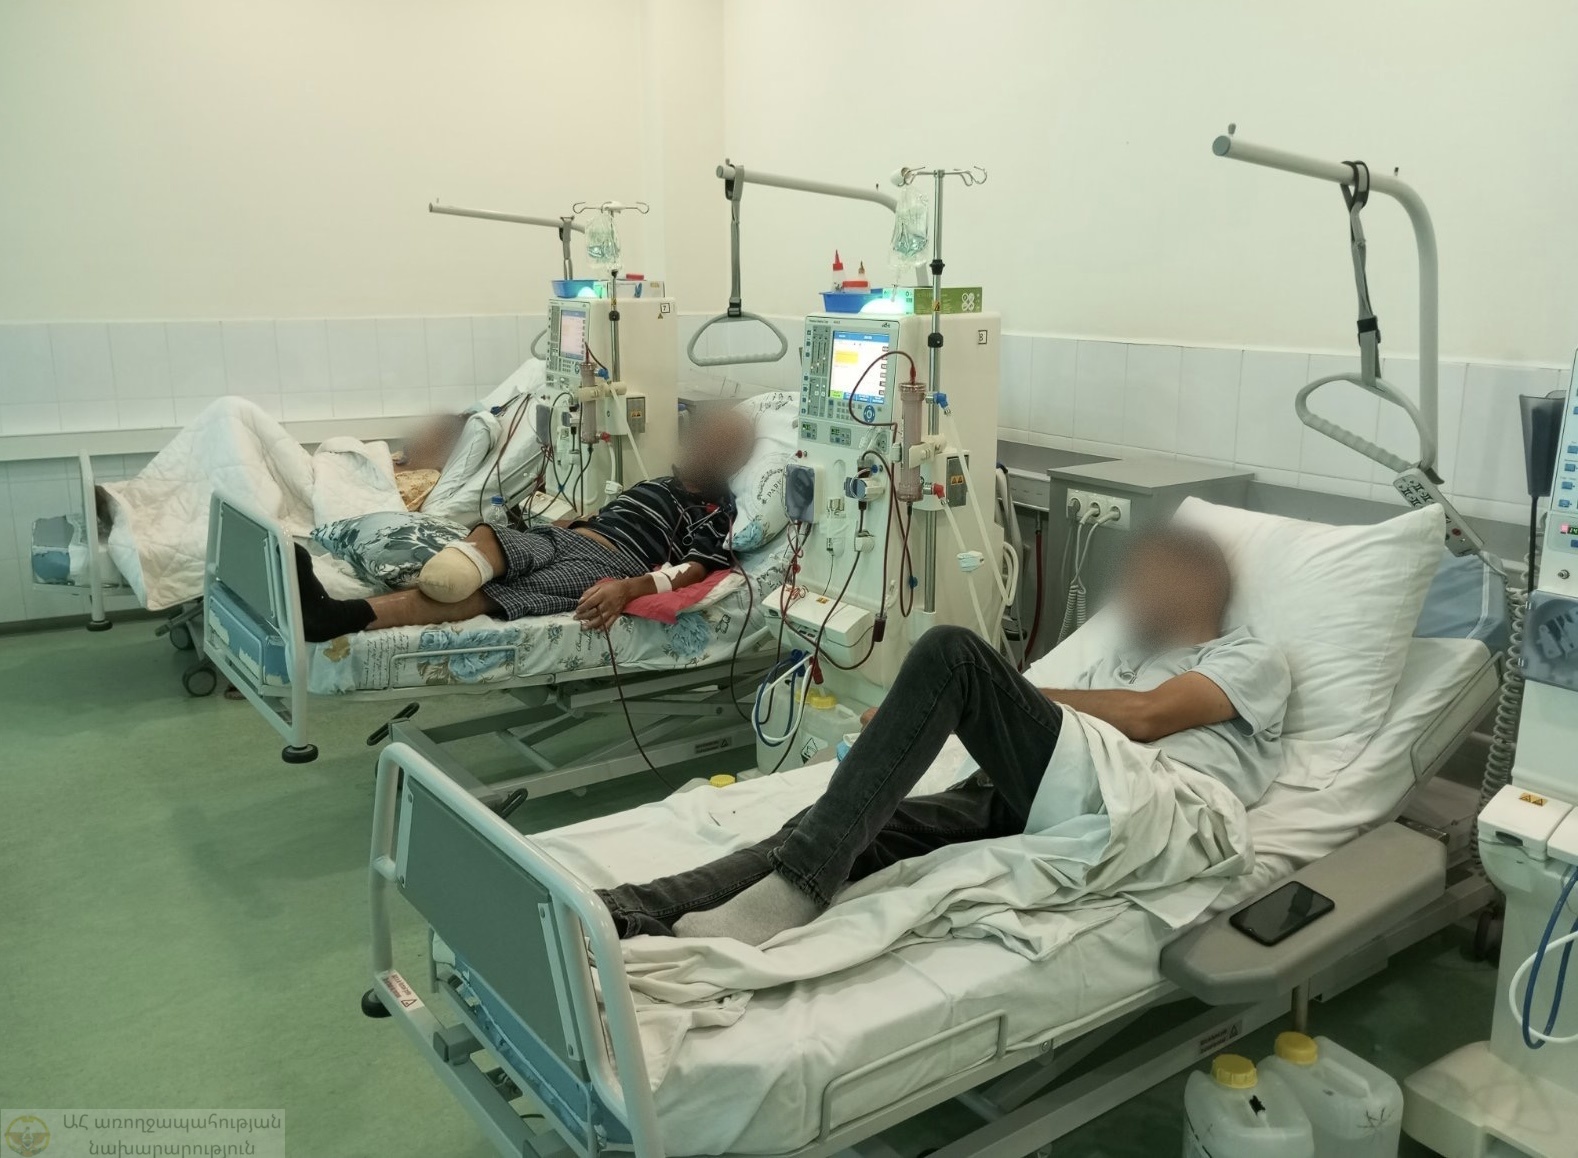 Министерство здравоохранения Республики Арцах обратилось в Международный Комитет Красного Креста с просьбой об эвакуации пациентов, получающих гемодиализ